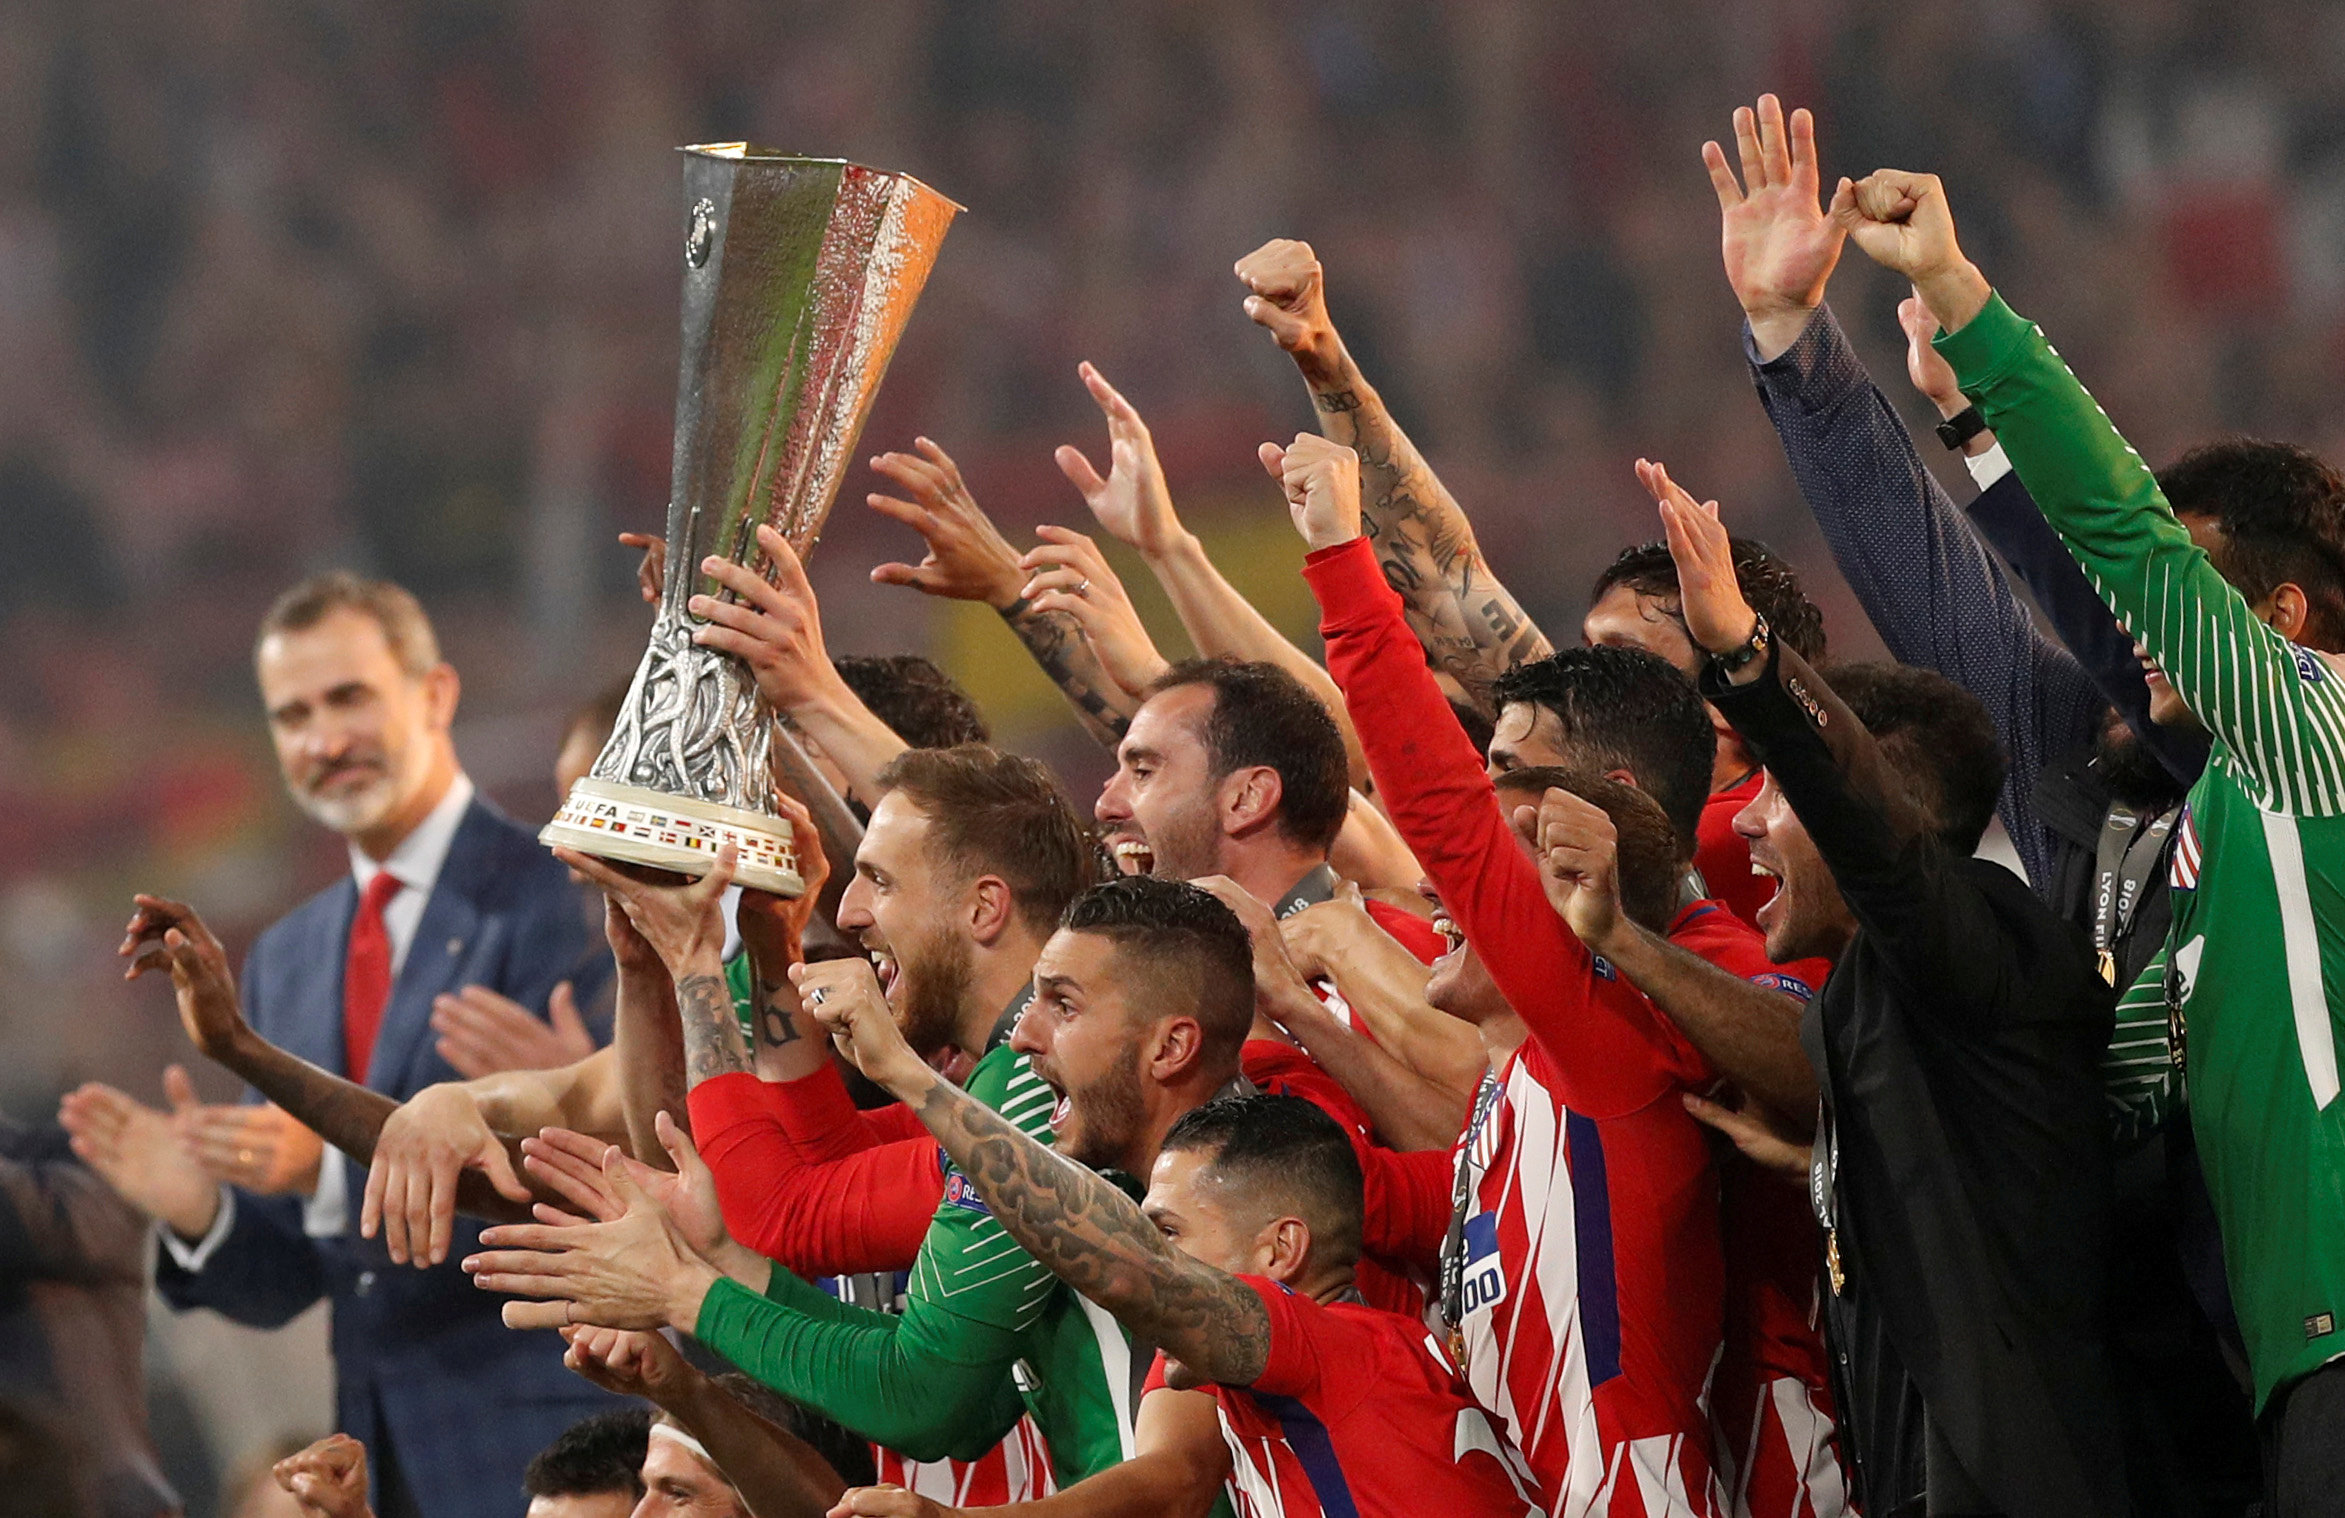 Η νίκη της Ατλέτικο στον τελικό του Europa League μέσα από τις φωτογραφίες